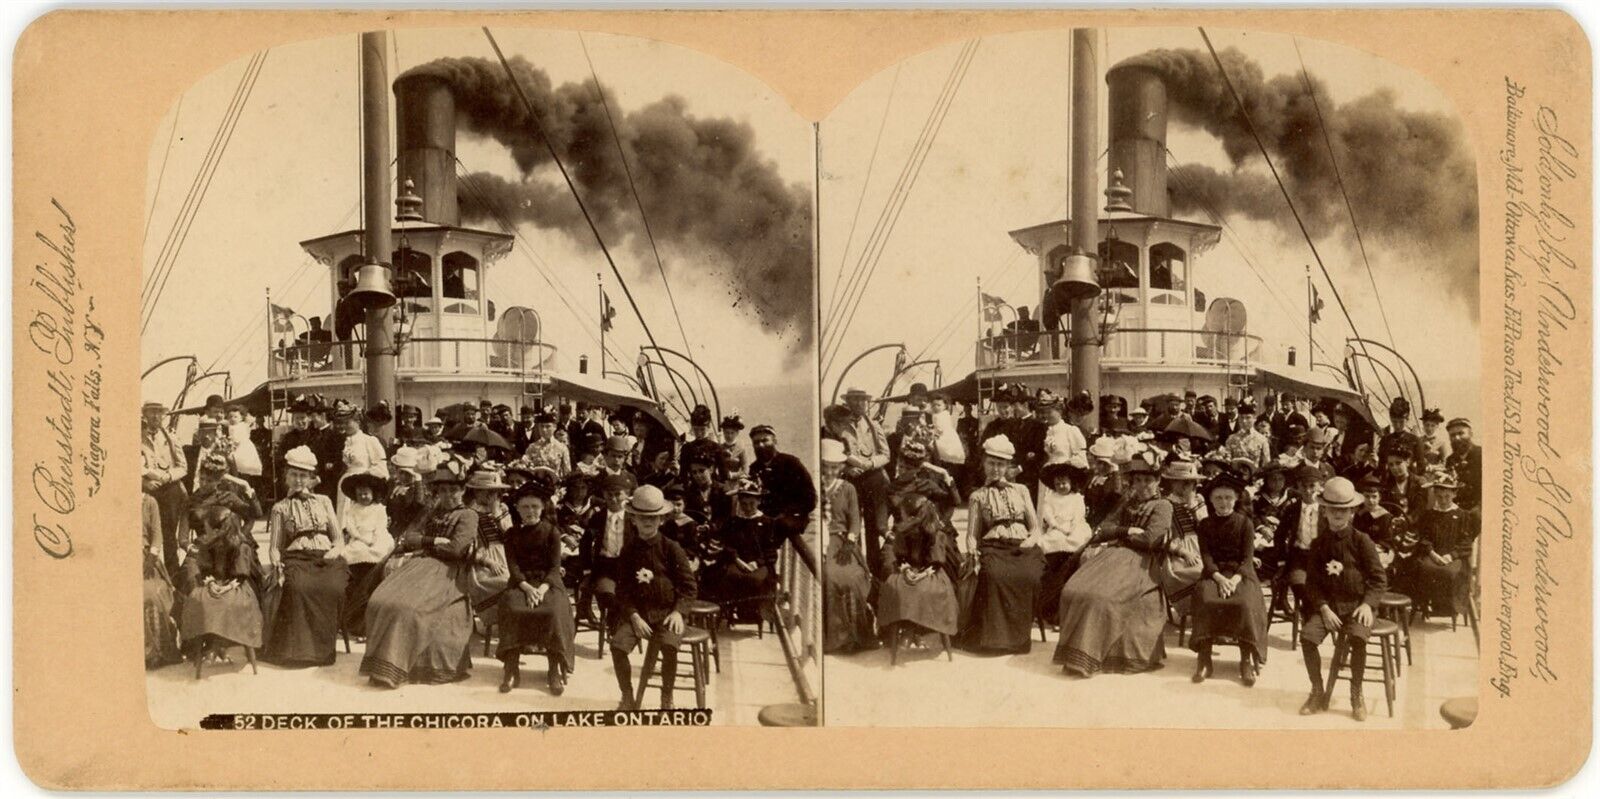 CANADA SV - Ontario - Passengers on Deck of Chicora - Bierstadt 1880s